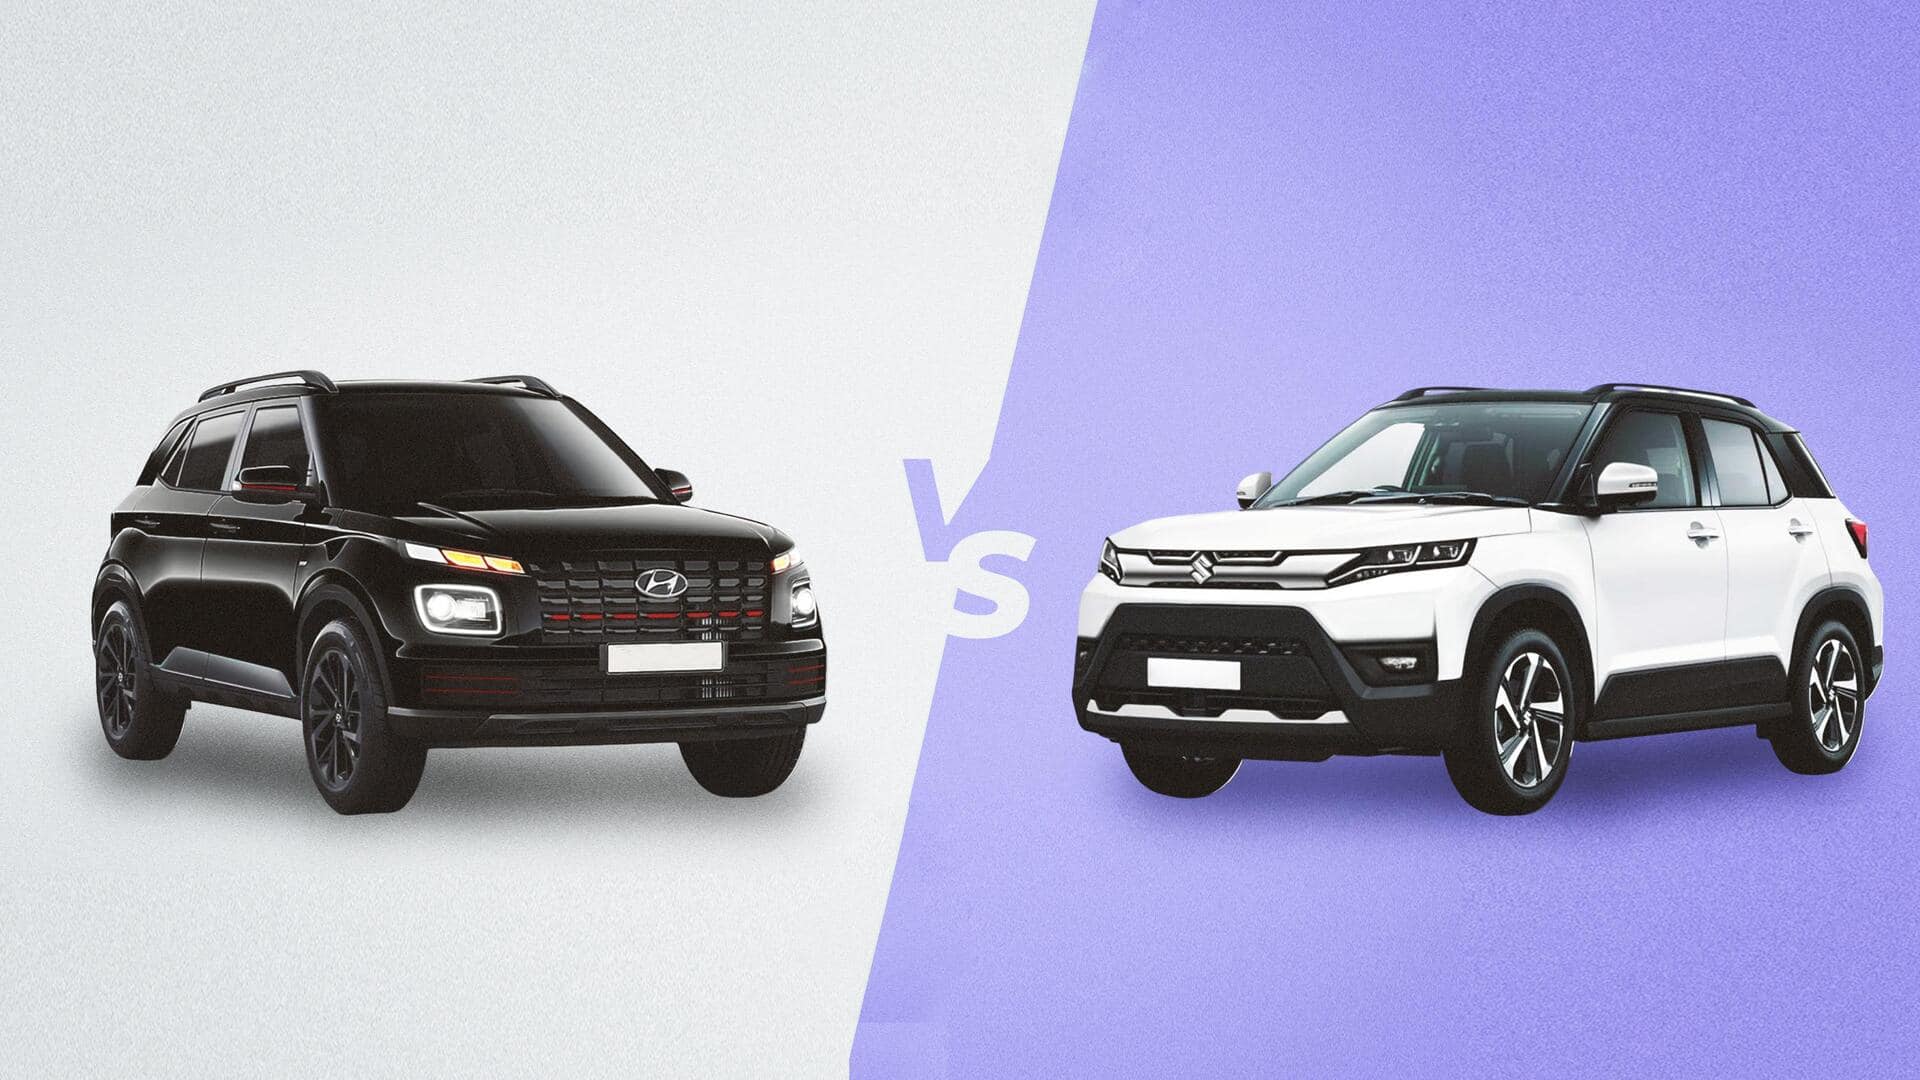 हुंडई वेन्यू नाइट बनाम मारुति ब्रेजा: तुलना से जानिए कौन-सी कॉम्पैक्ट SUV है बेहतर  